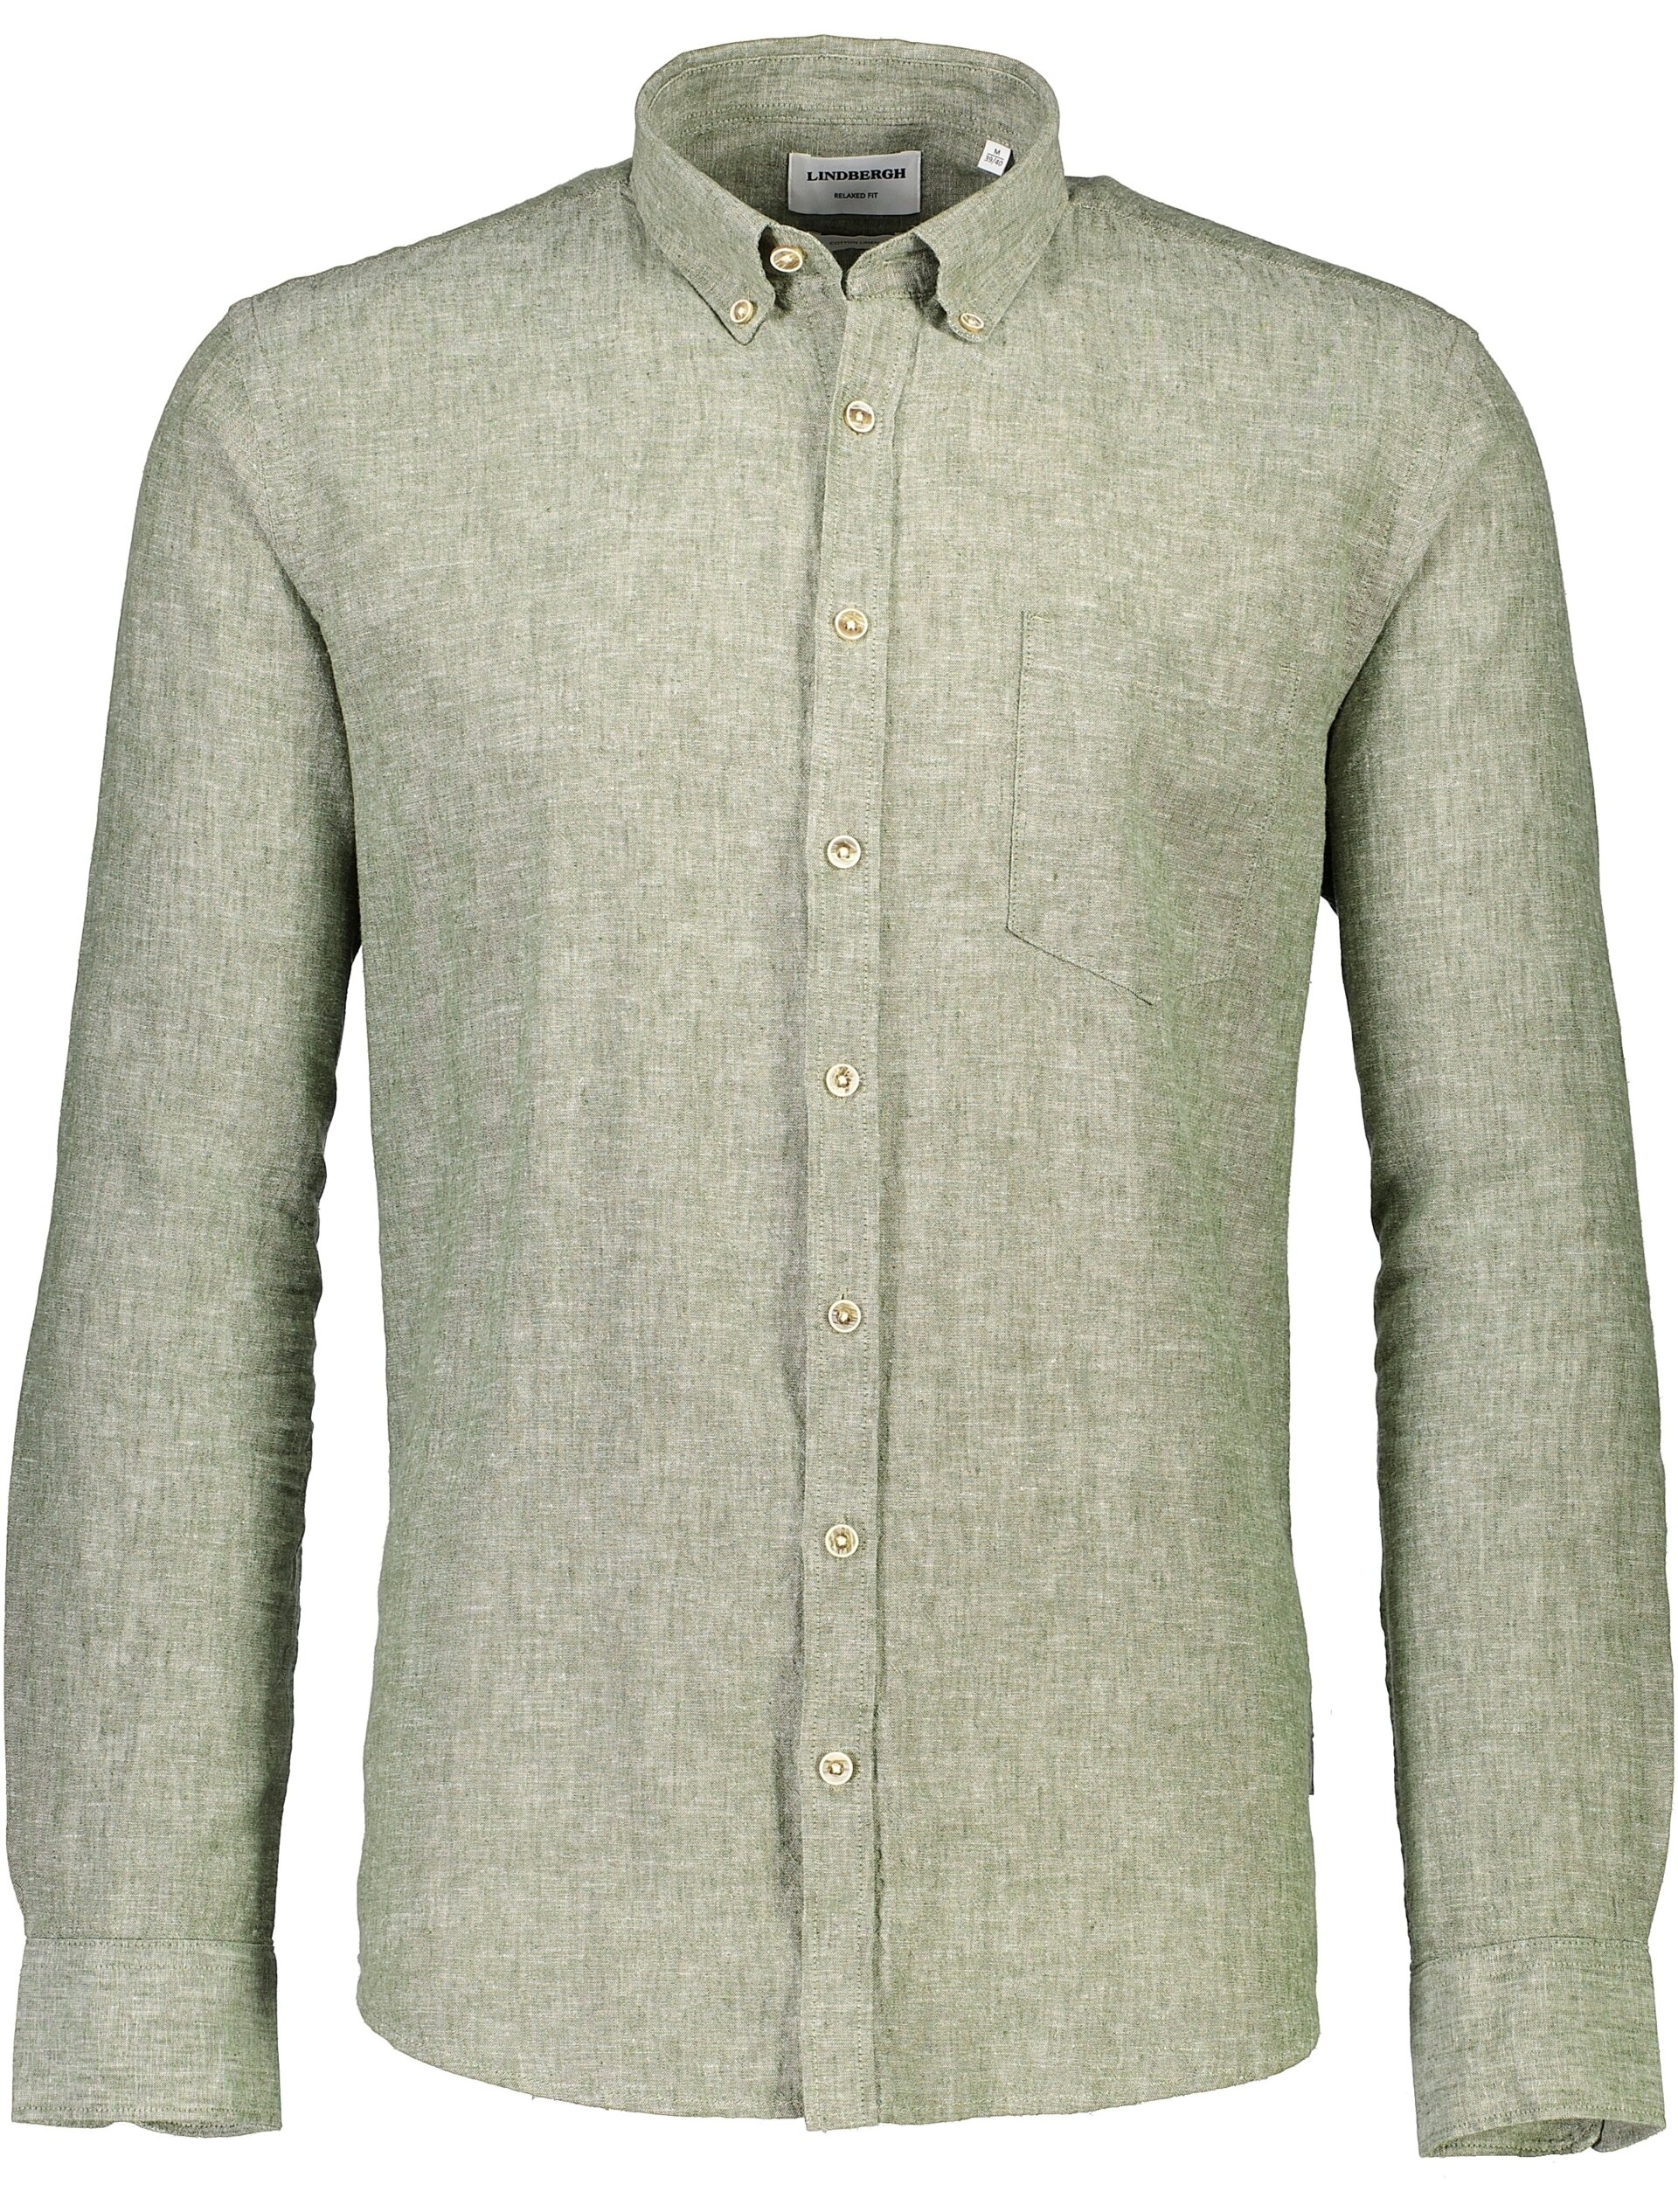 Lindbergh Linen shirt green / army